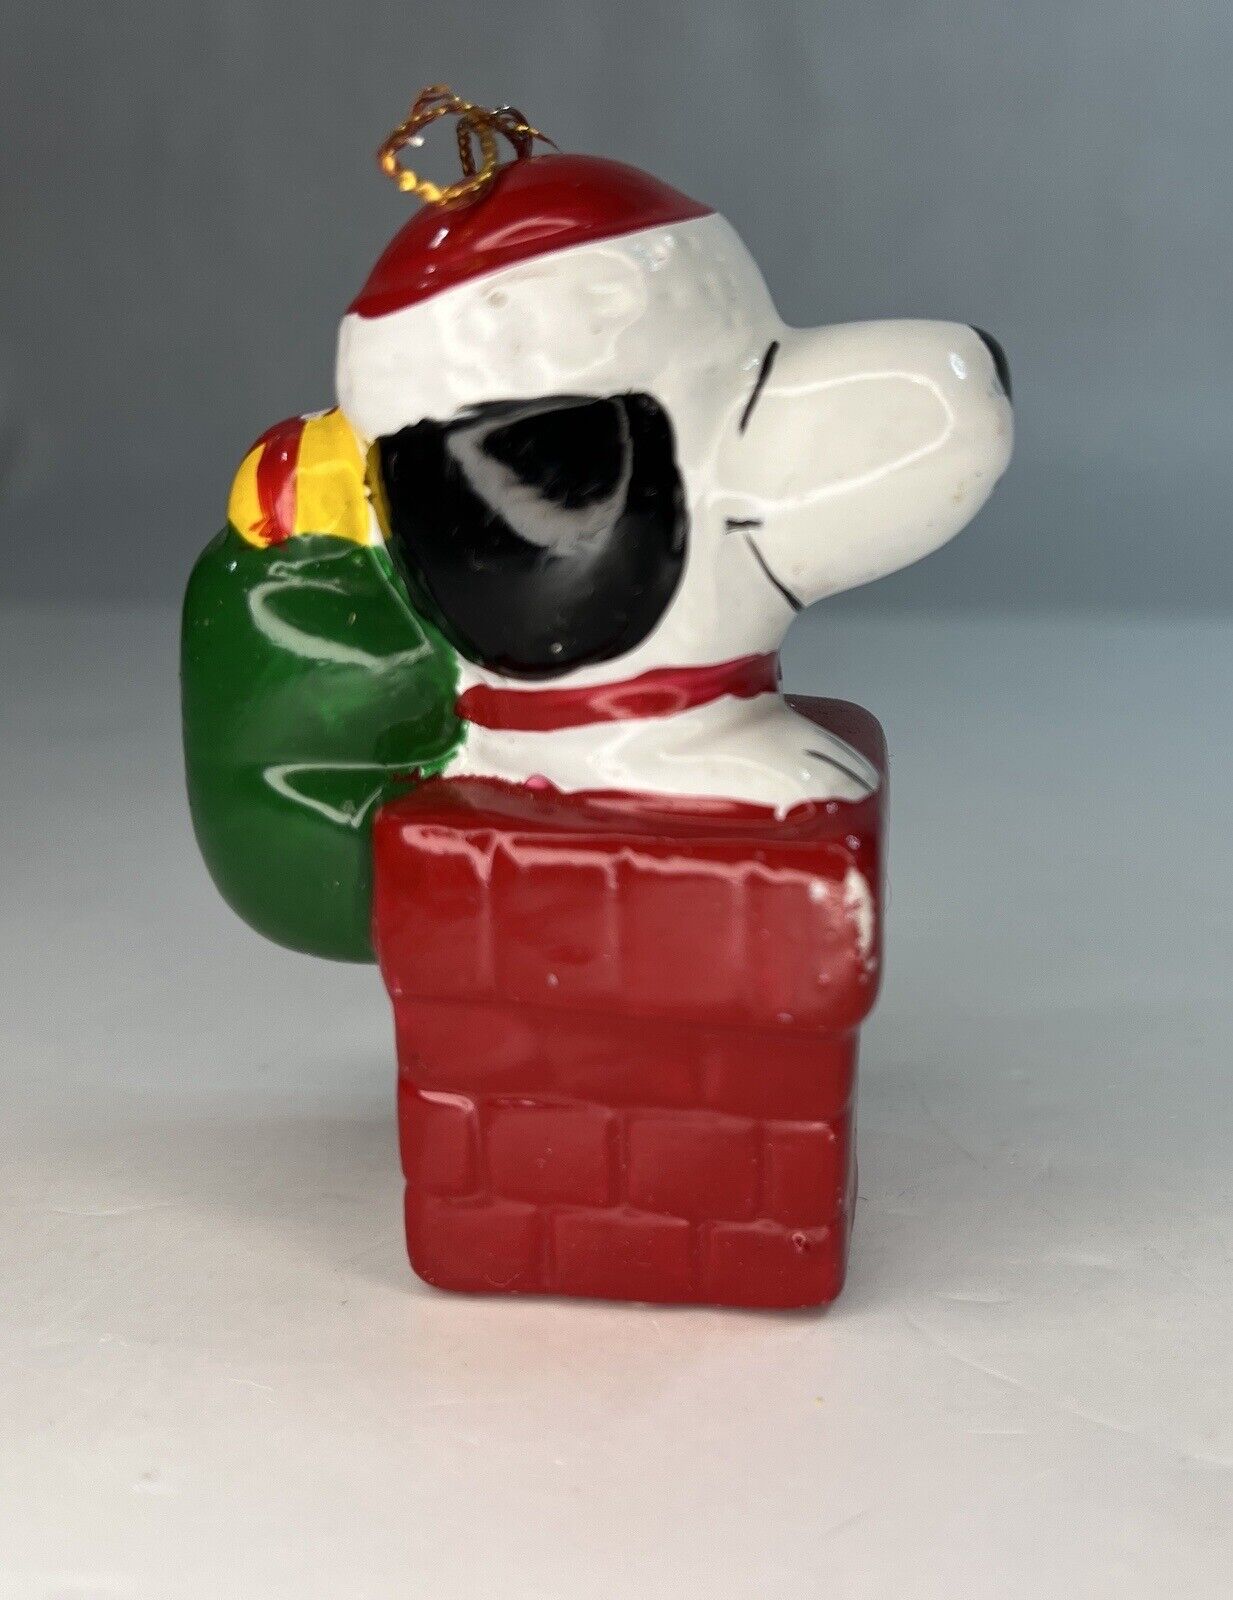 VTG Snoopy As Santa Claus Merry Christmas 1960’s Ornament Ceramic Chimney